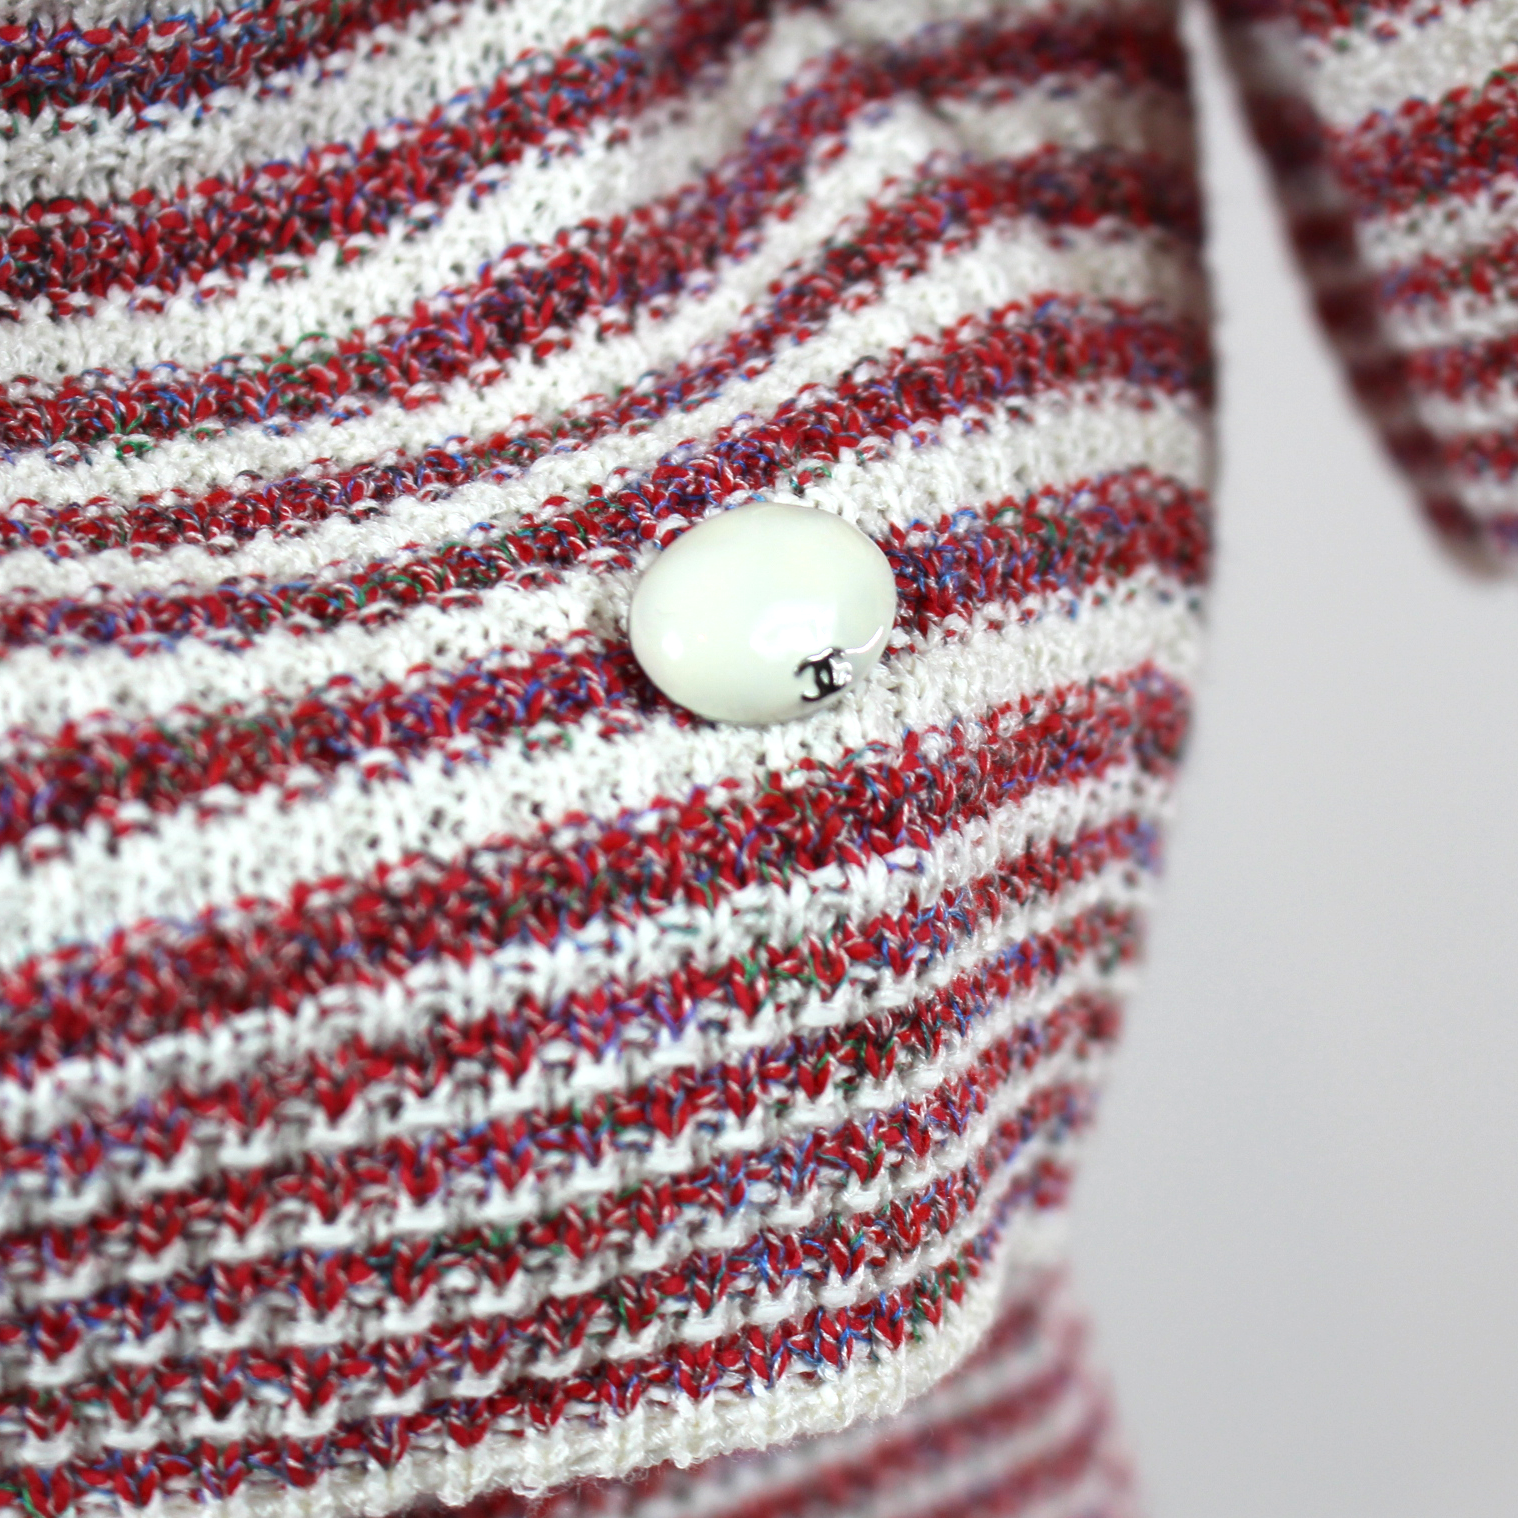 Chanel Red White Striped Knit Boxy Sweater Mini Skirt Matching